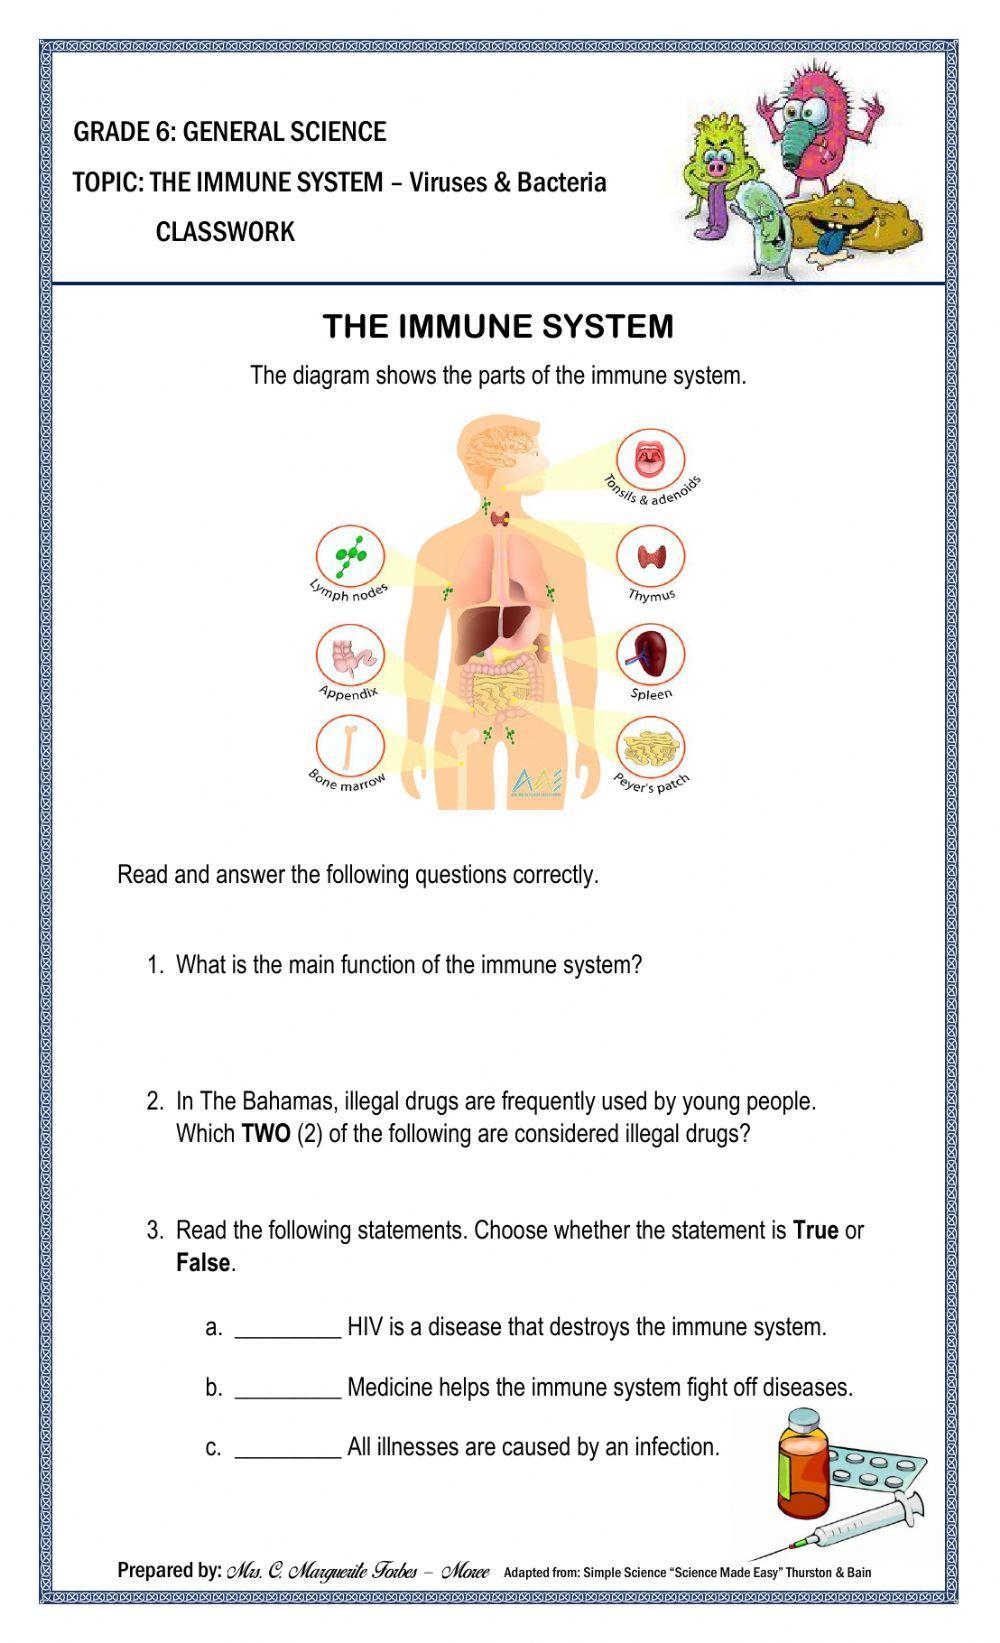 The Immune System Classwork